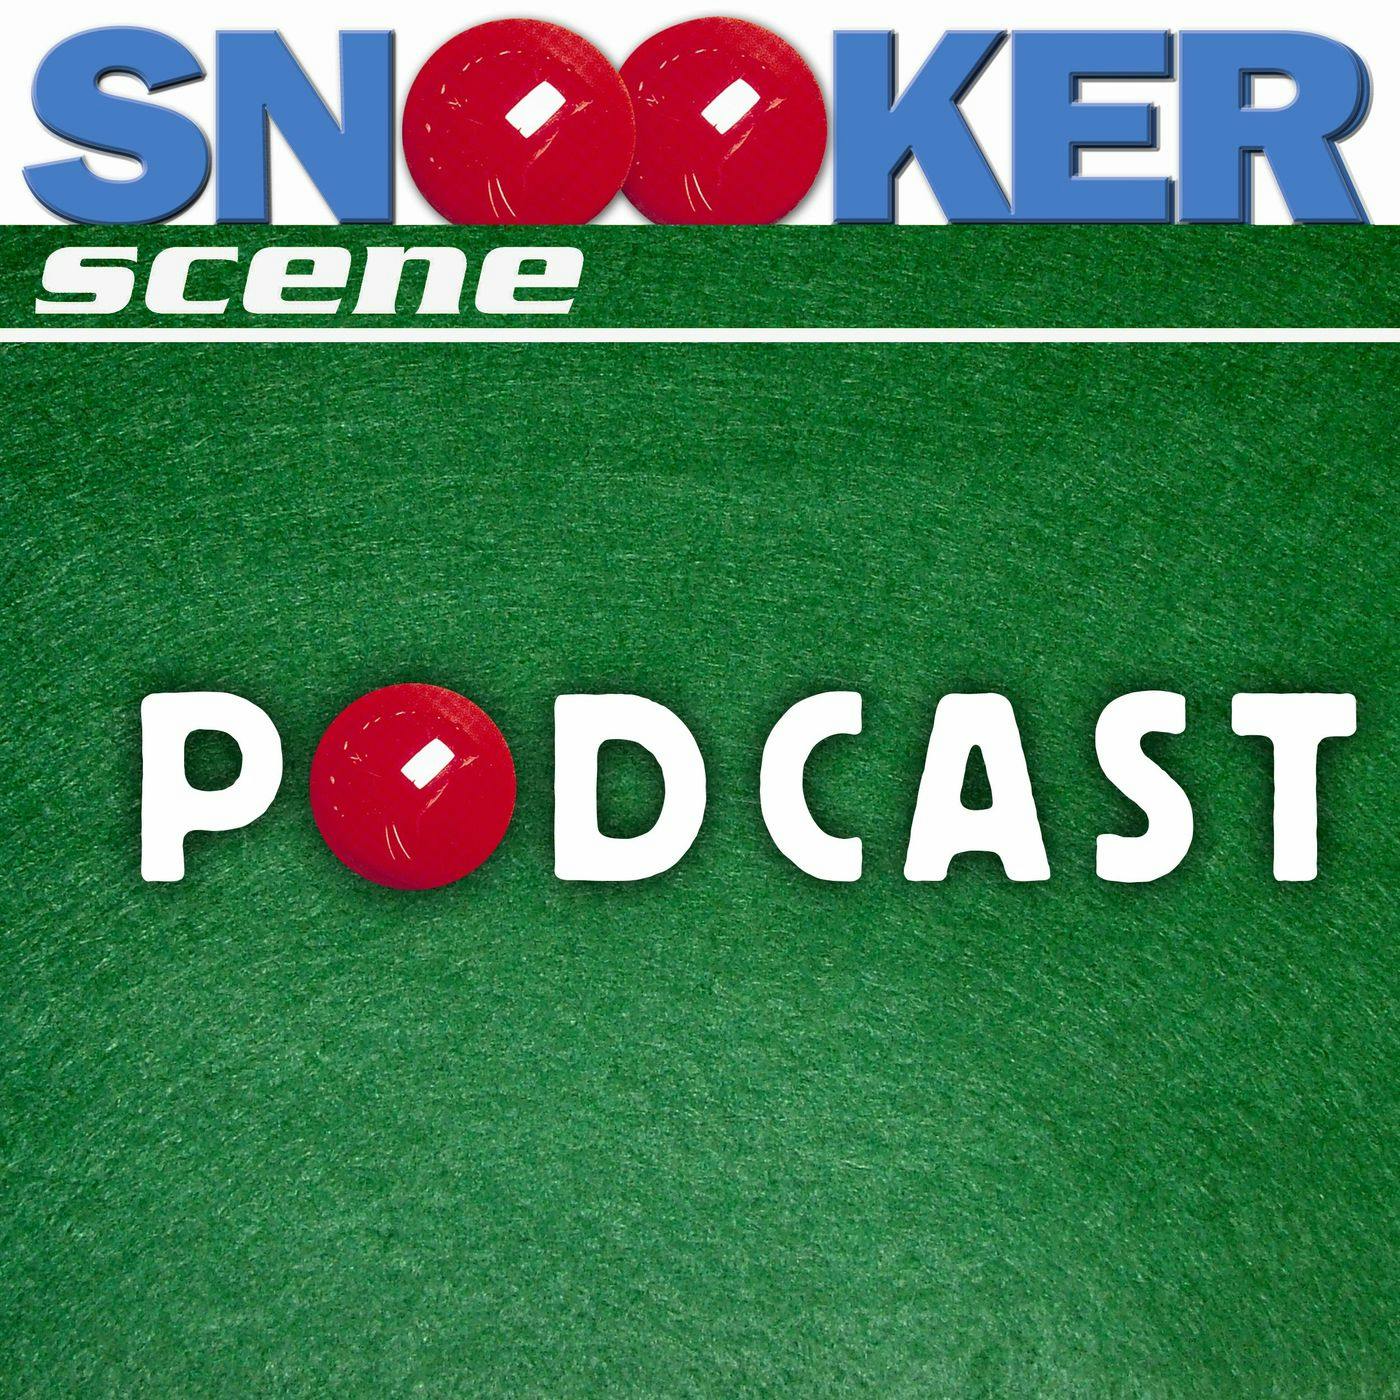 Snooker Scene Podcast episode 192 - Life Begins at 44